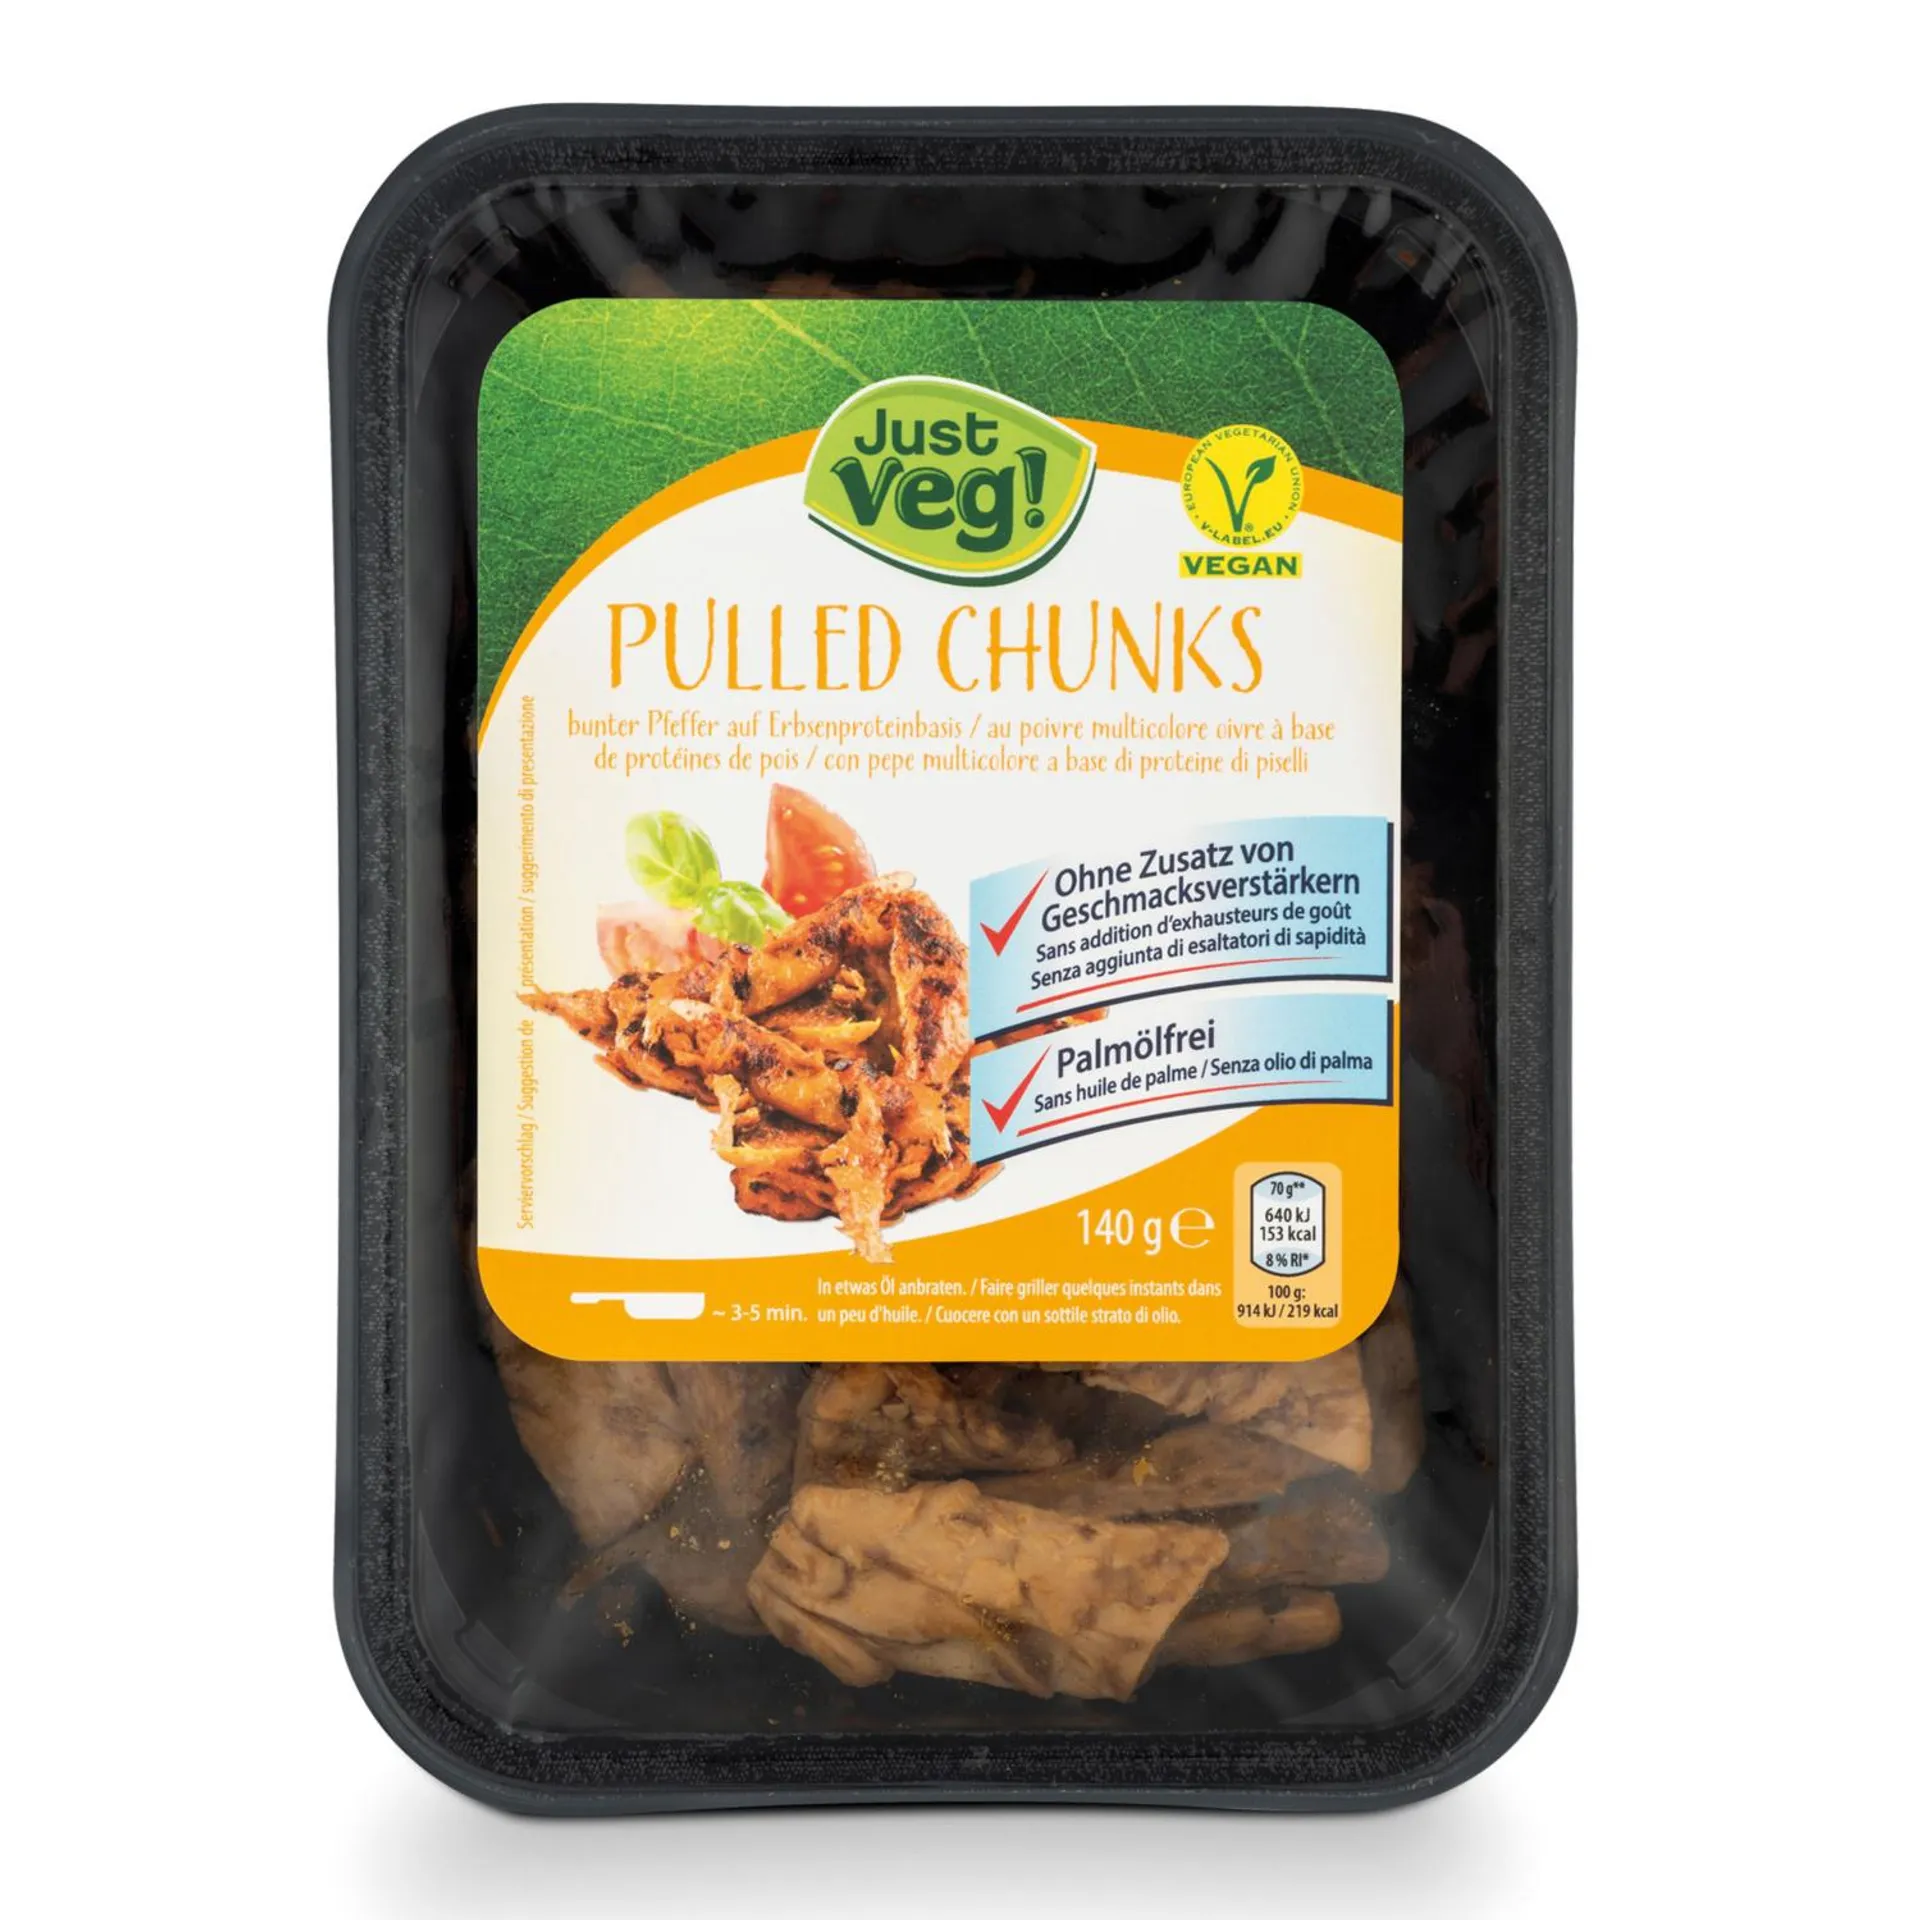 JUST VEG! Veggie-Sortiment, Pulled Chunks